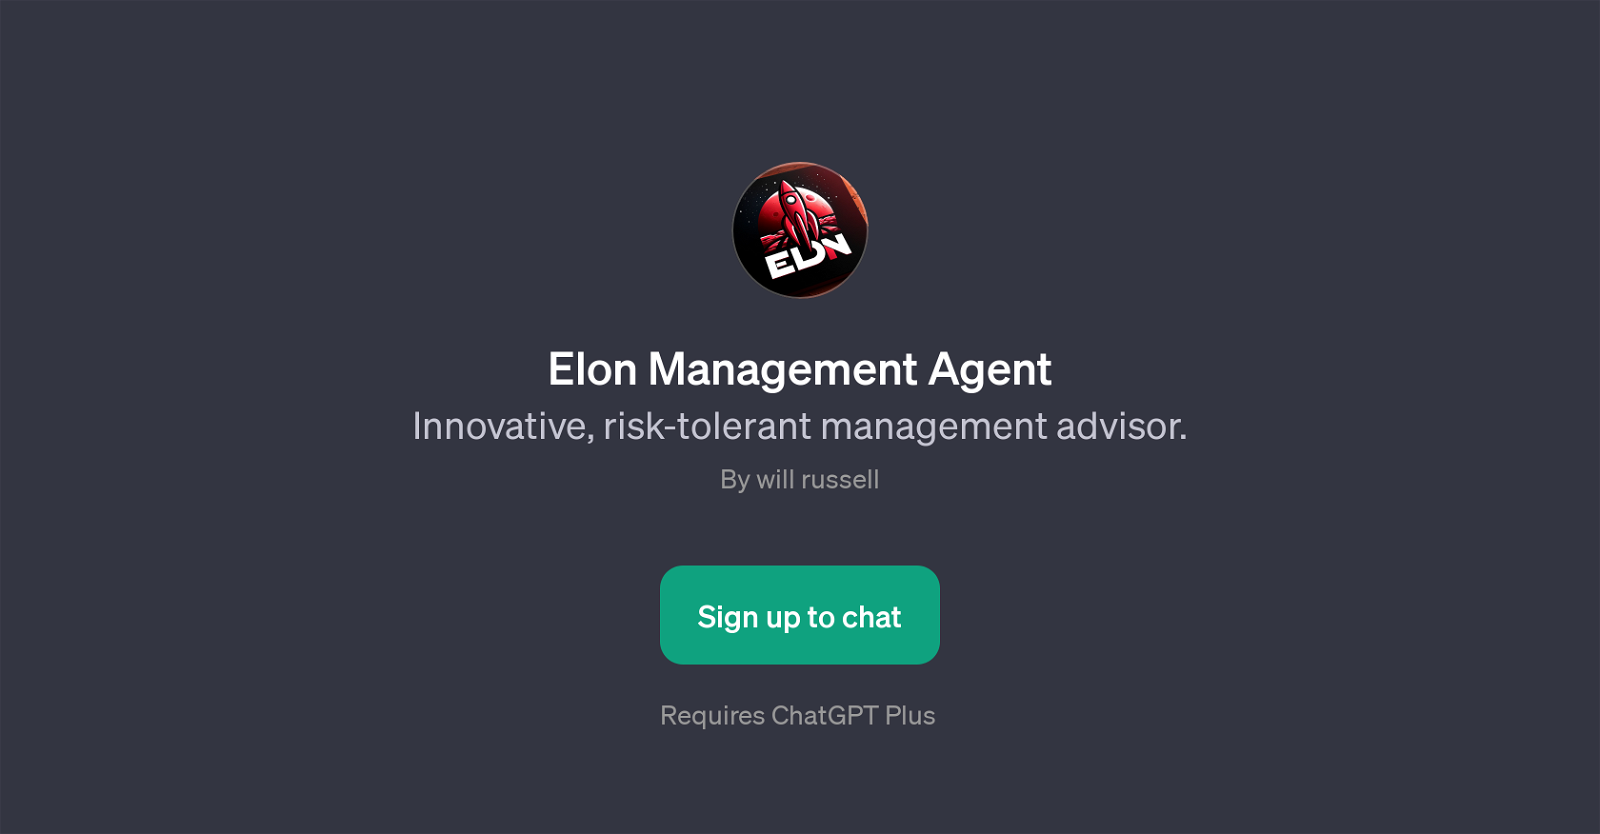 Elon Management Agent website